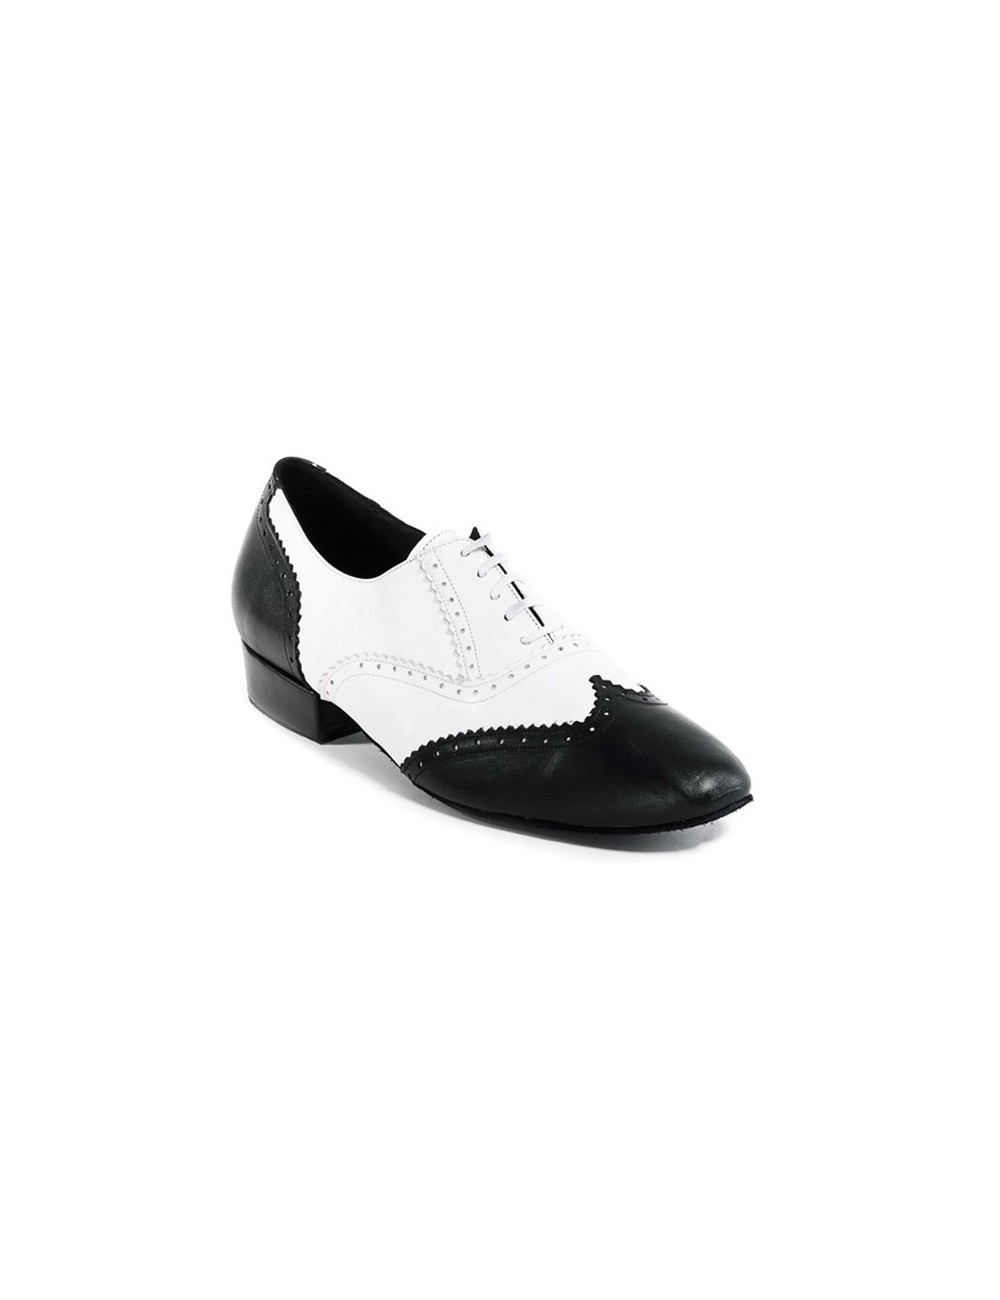 Zapatos de baile hombre blanco y negro